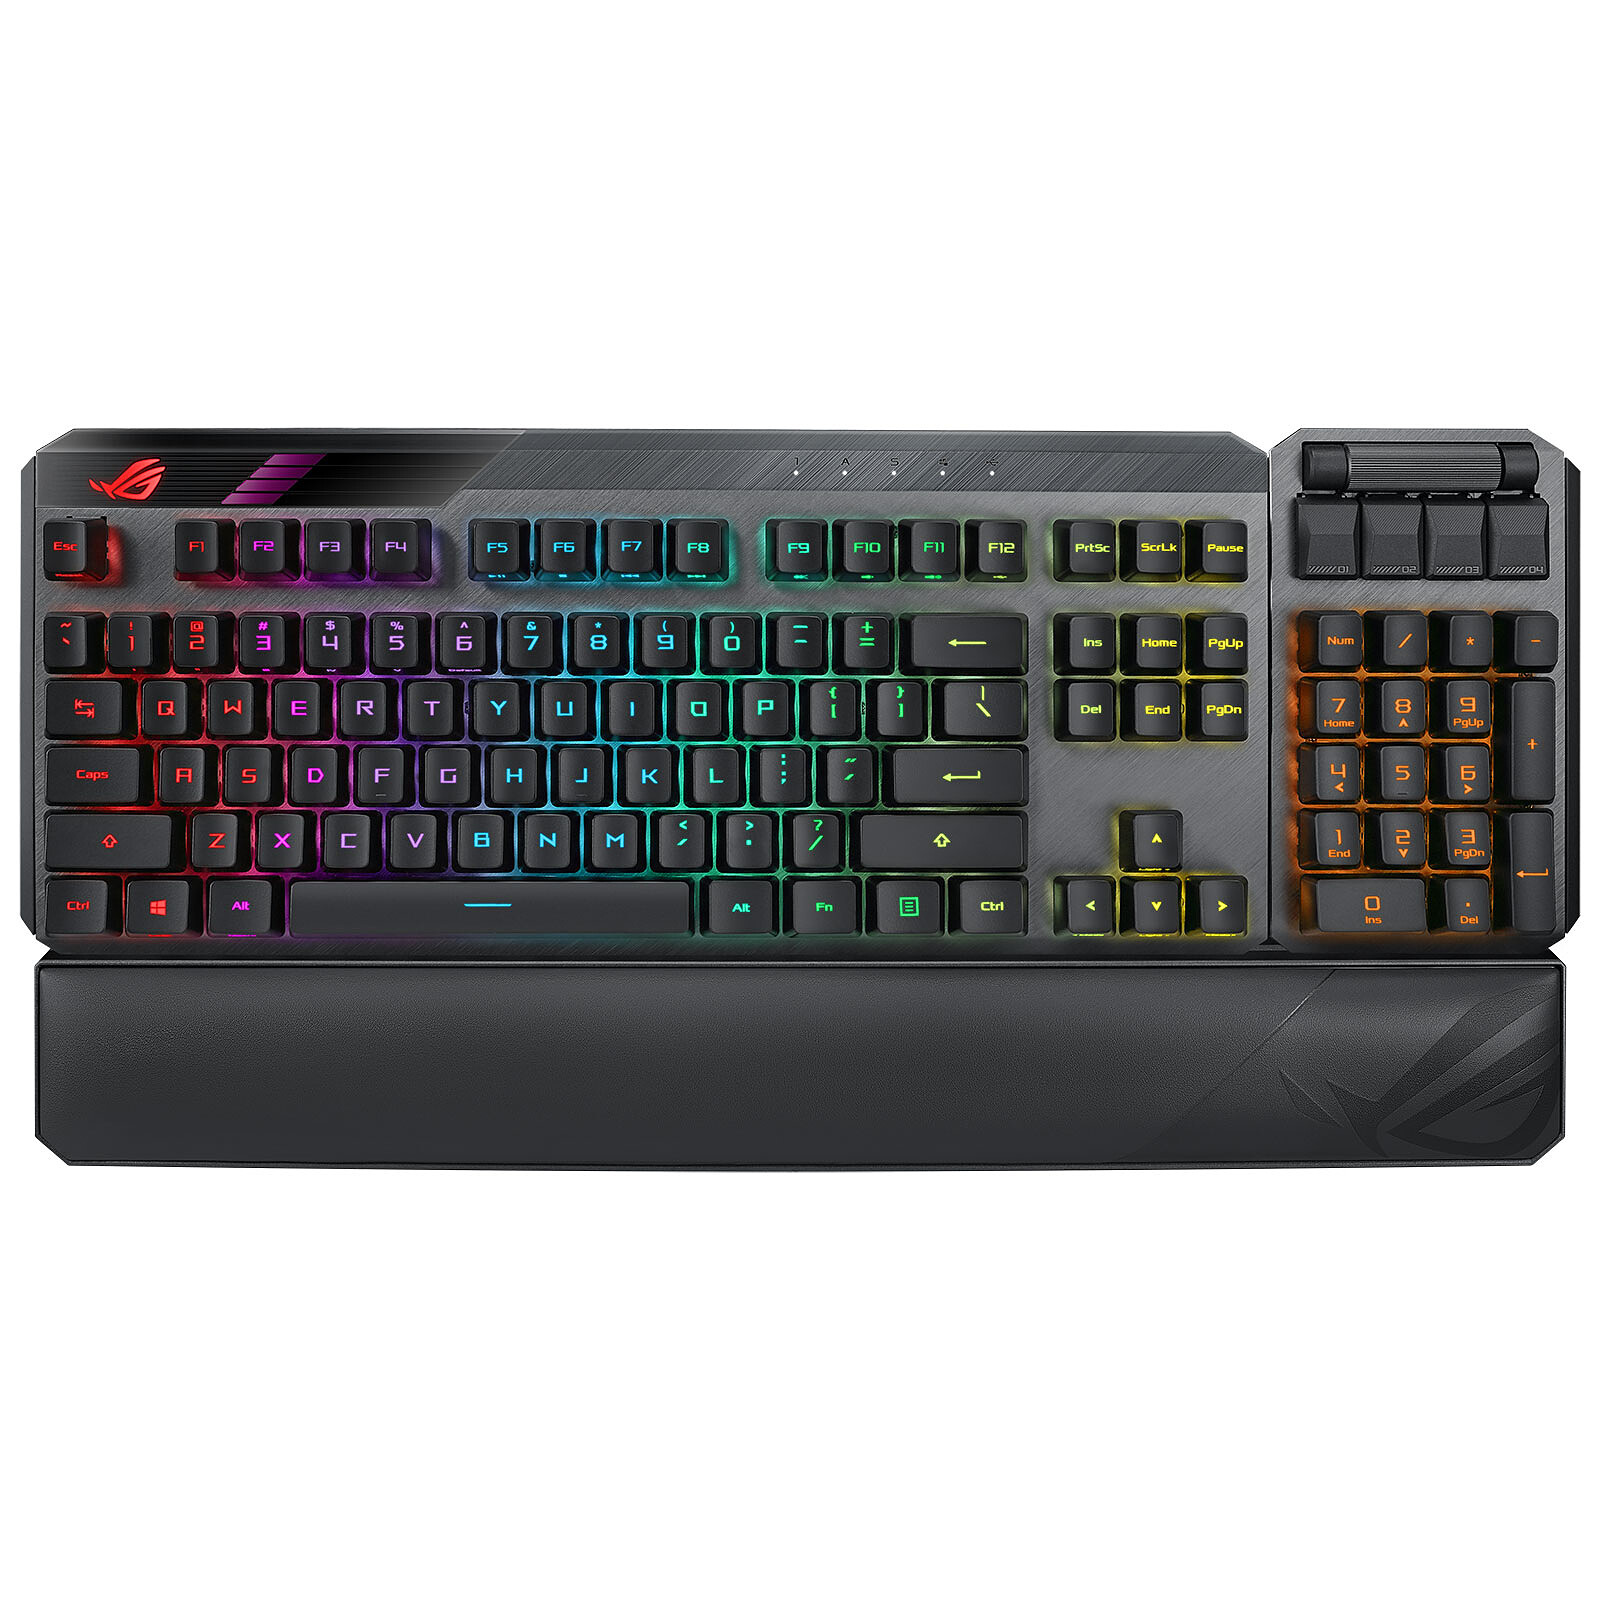 change keyboard backlight color asus